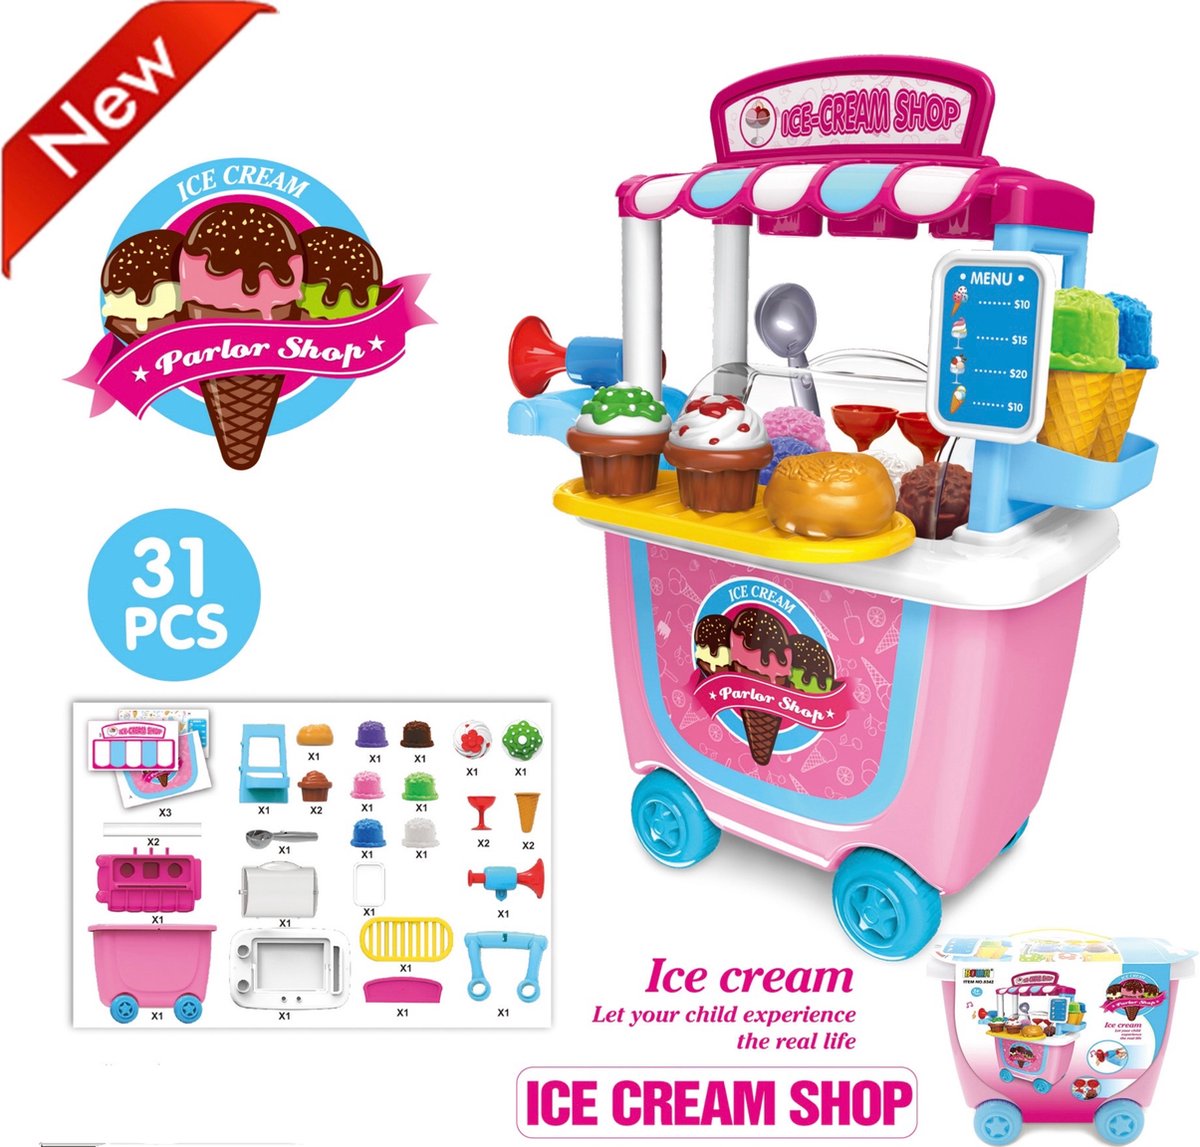 Kinder speelgoed - IJs kraam - Speelgoedwinkeltje - Marktkraam - Meeneemtrolley op wielen - Ice cream shop - Soft ijs